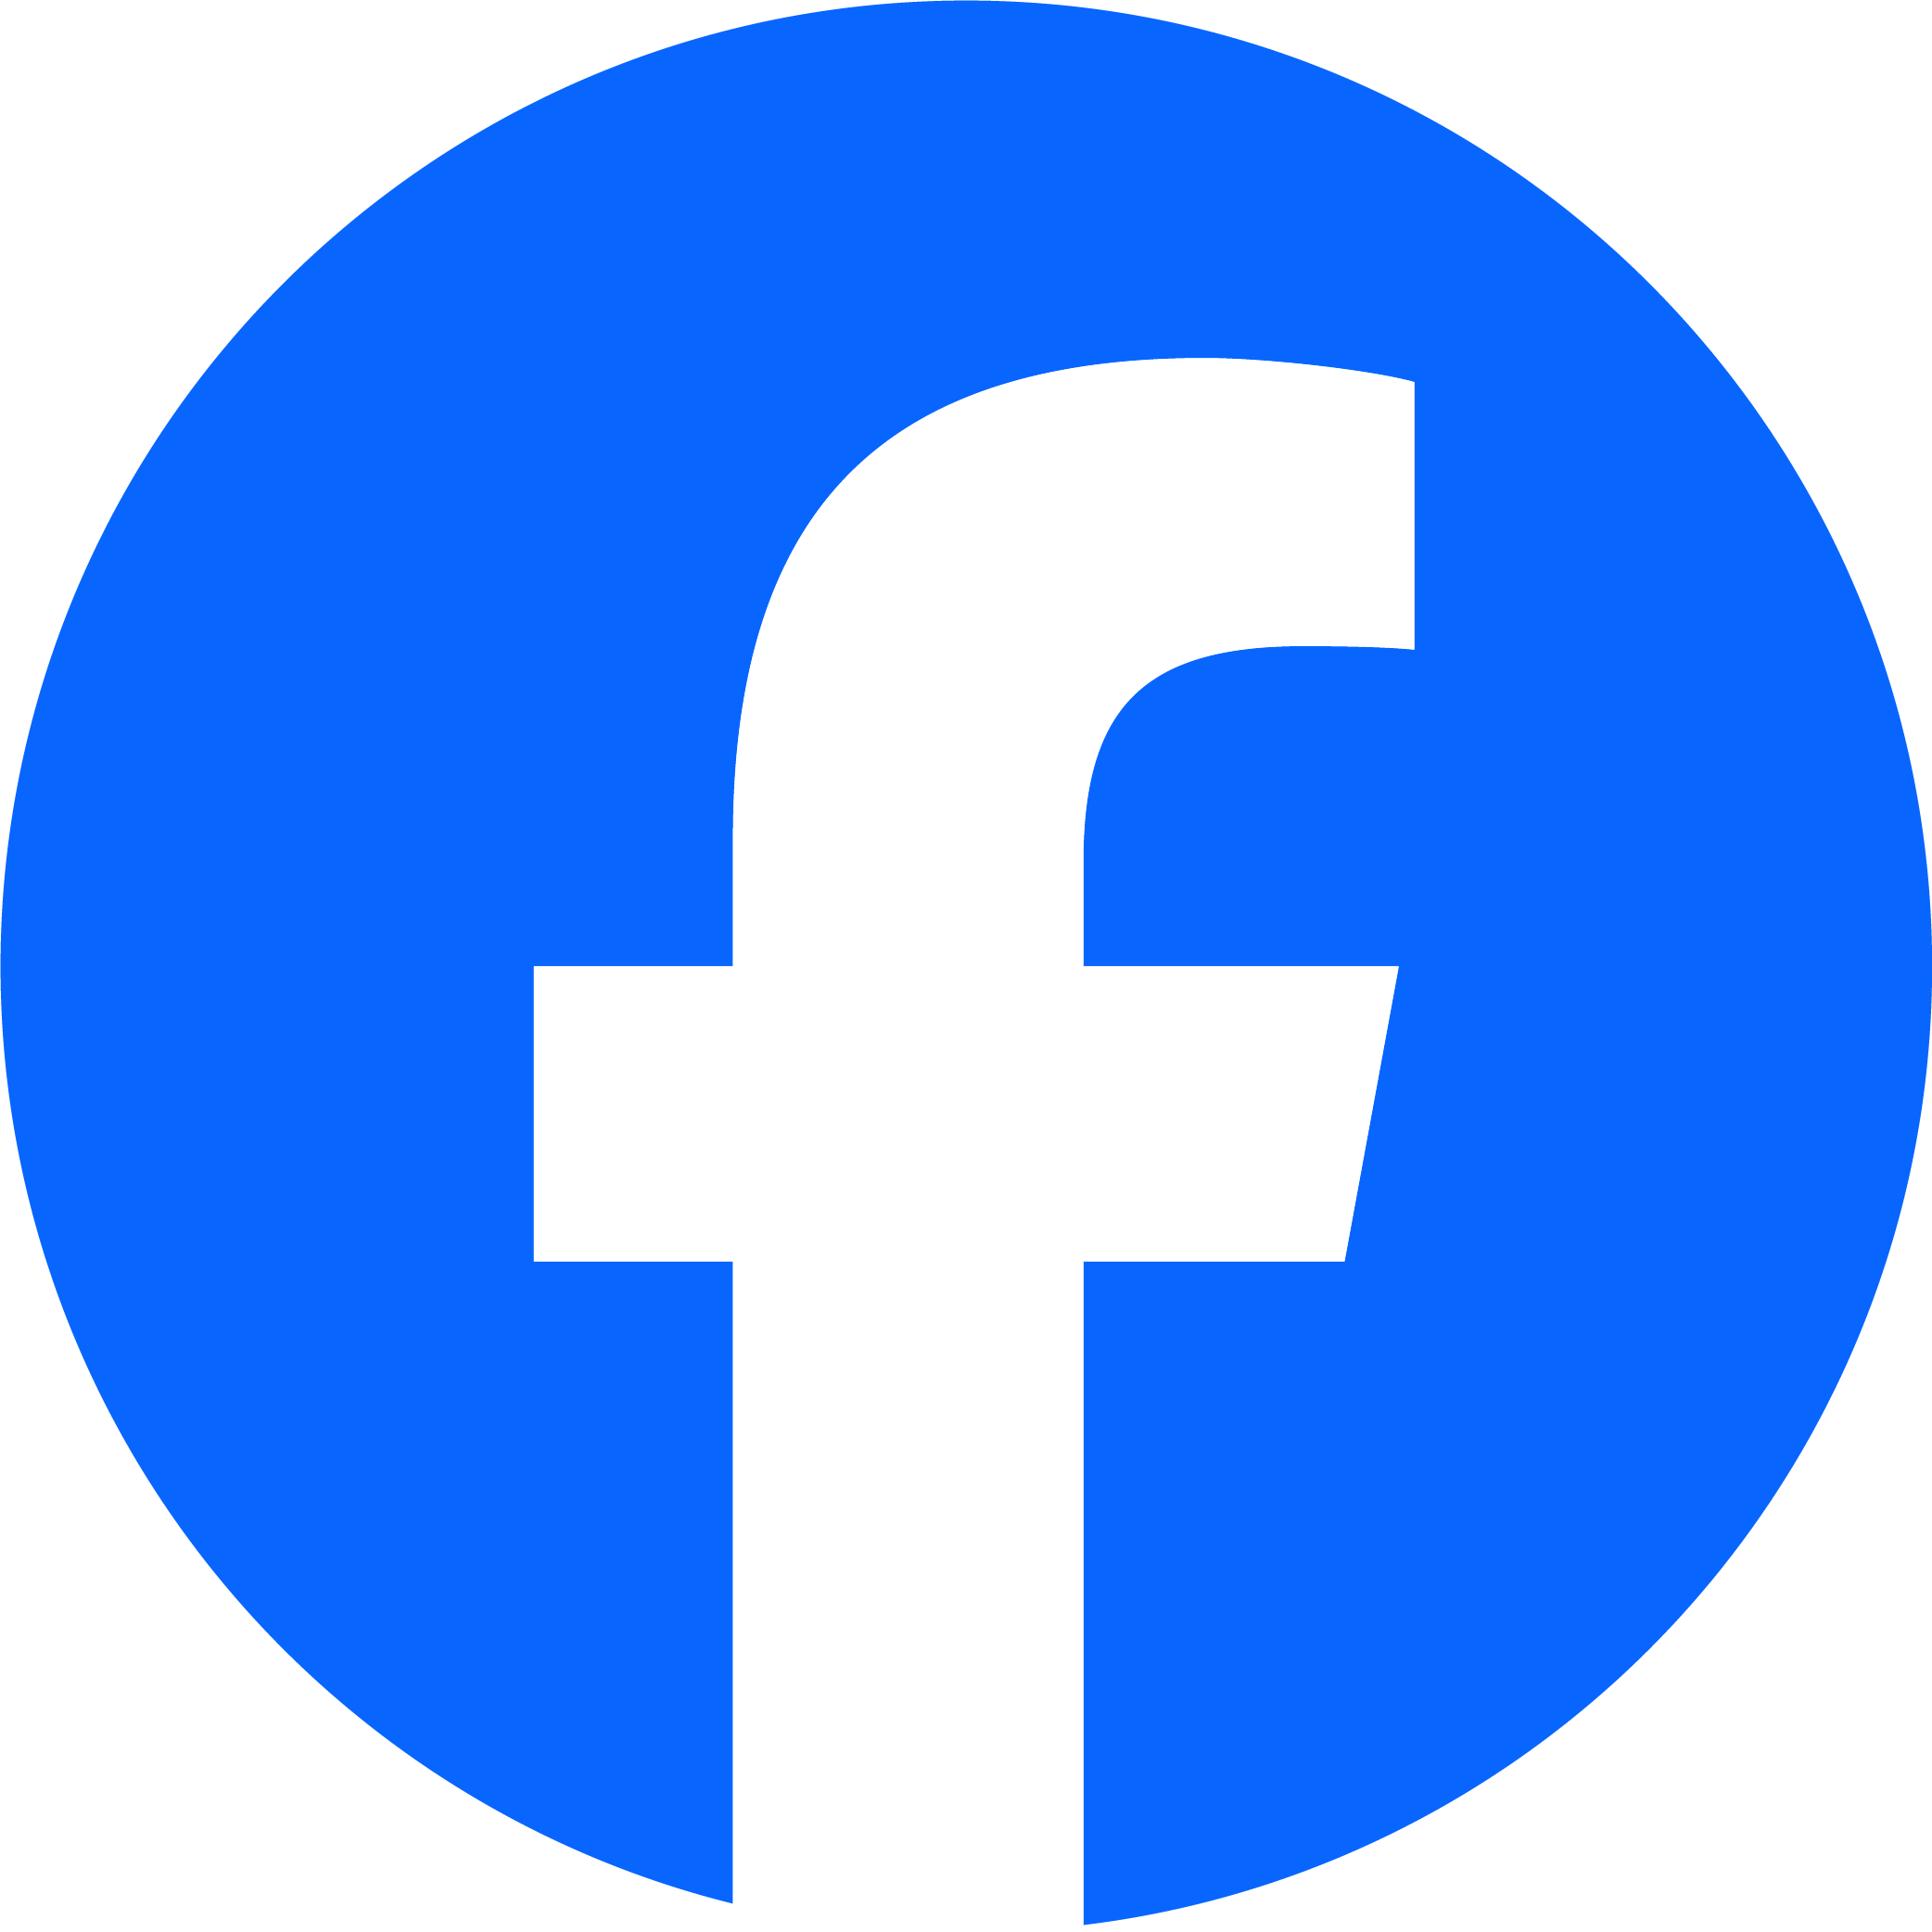 The logo of Facebook.